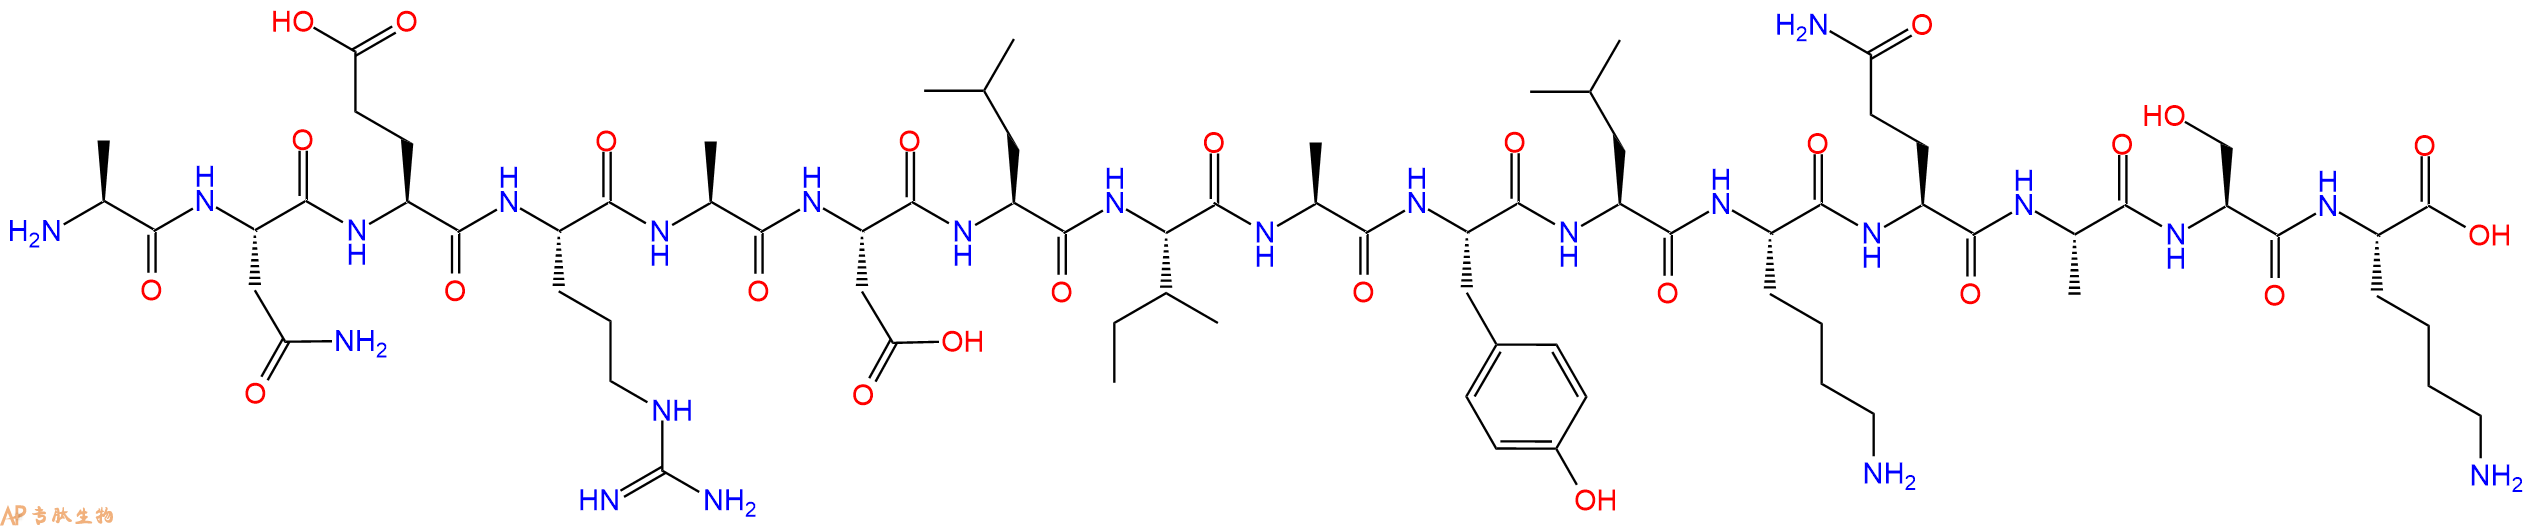 专肽生物产品[Ser102] - MCC (88 - 103), MCC (T102S)